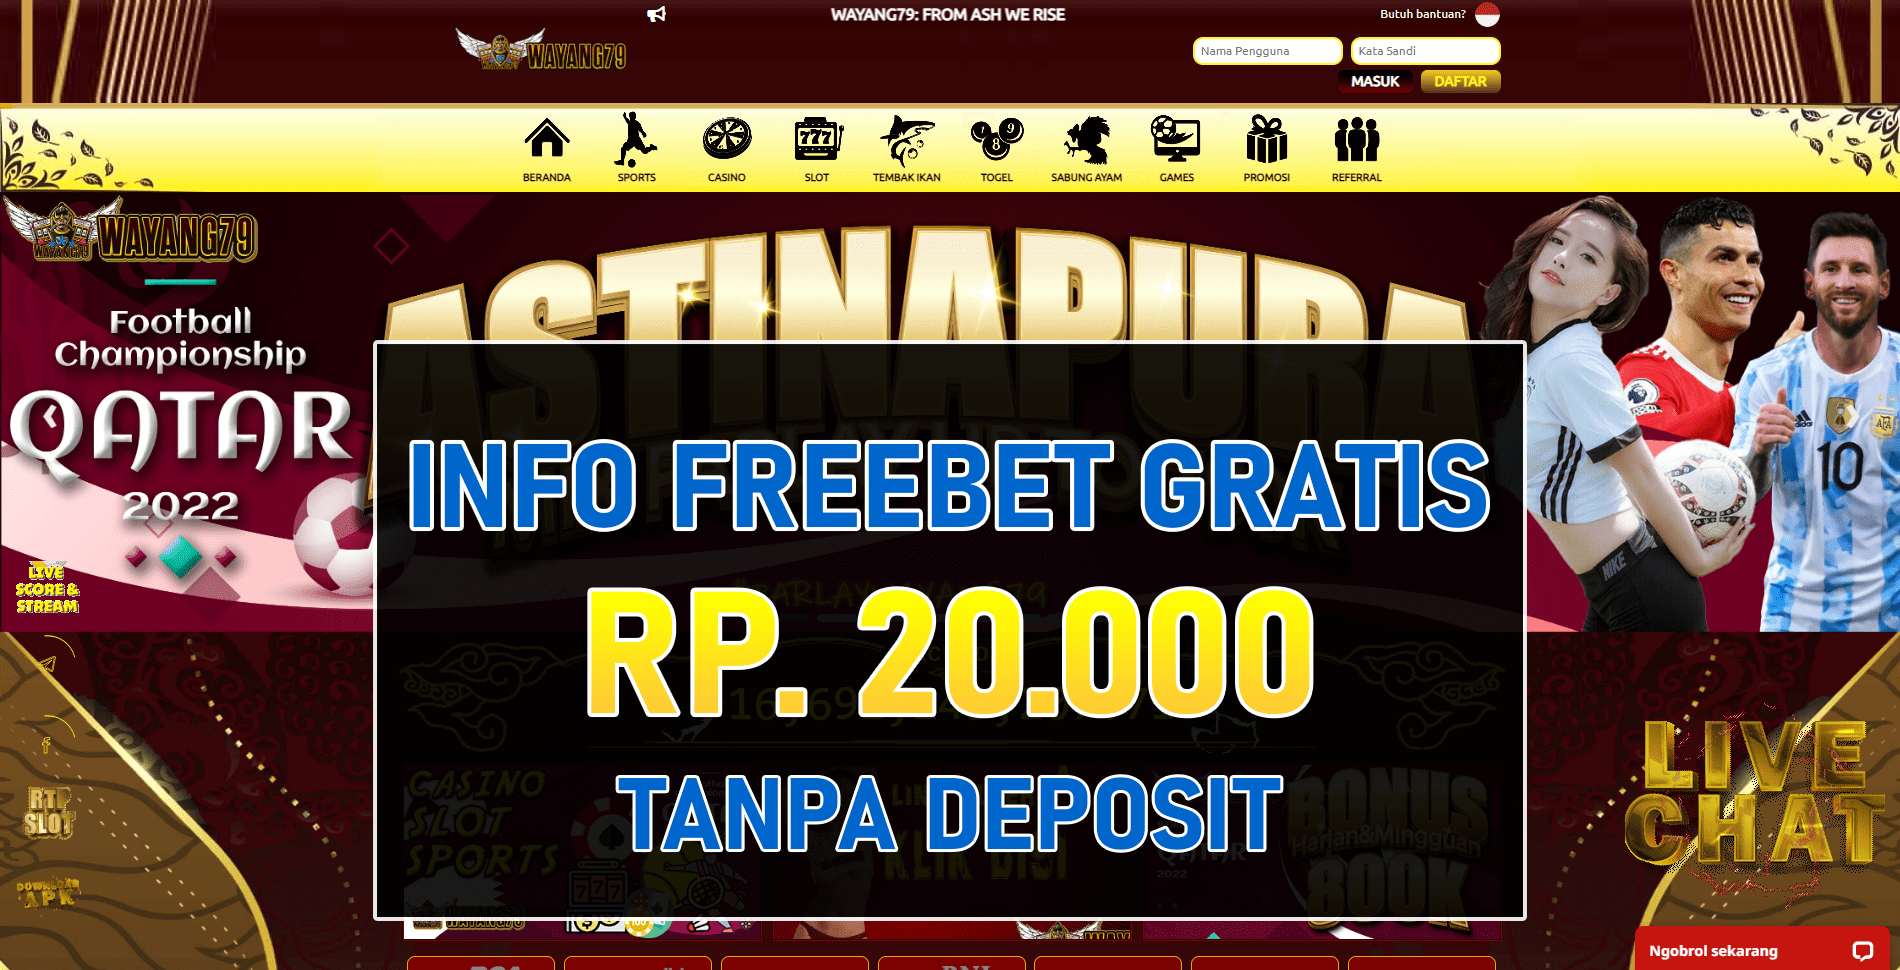 Freebet Tanpa Deposit Wayang79